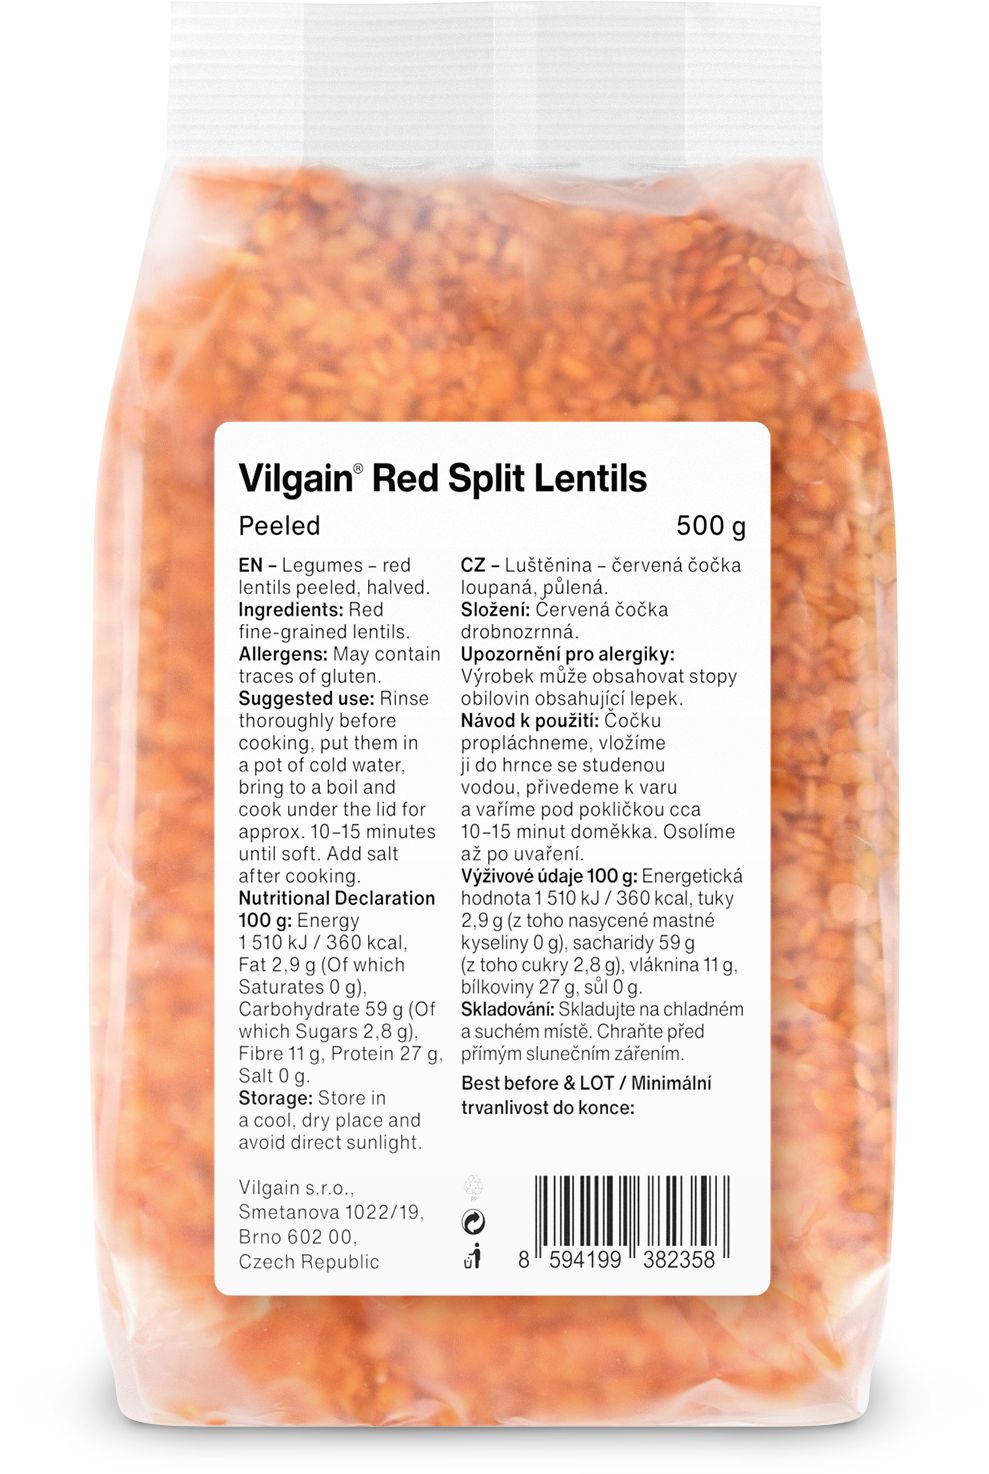 Vilgain Red split lentils